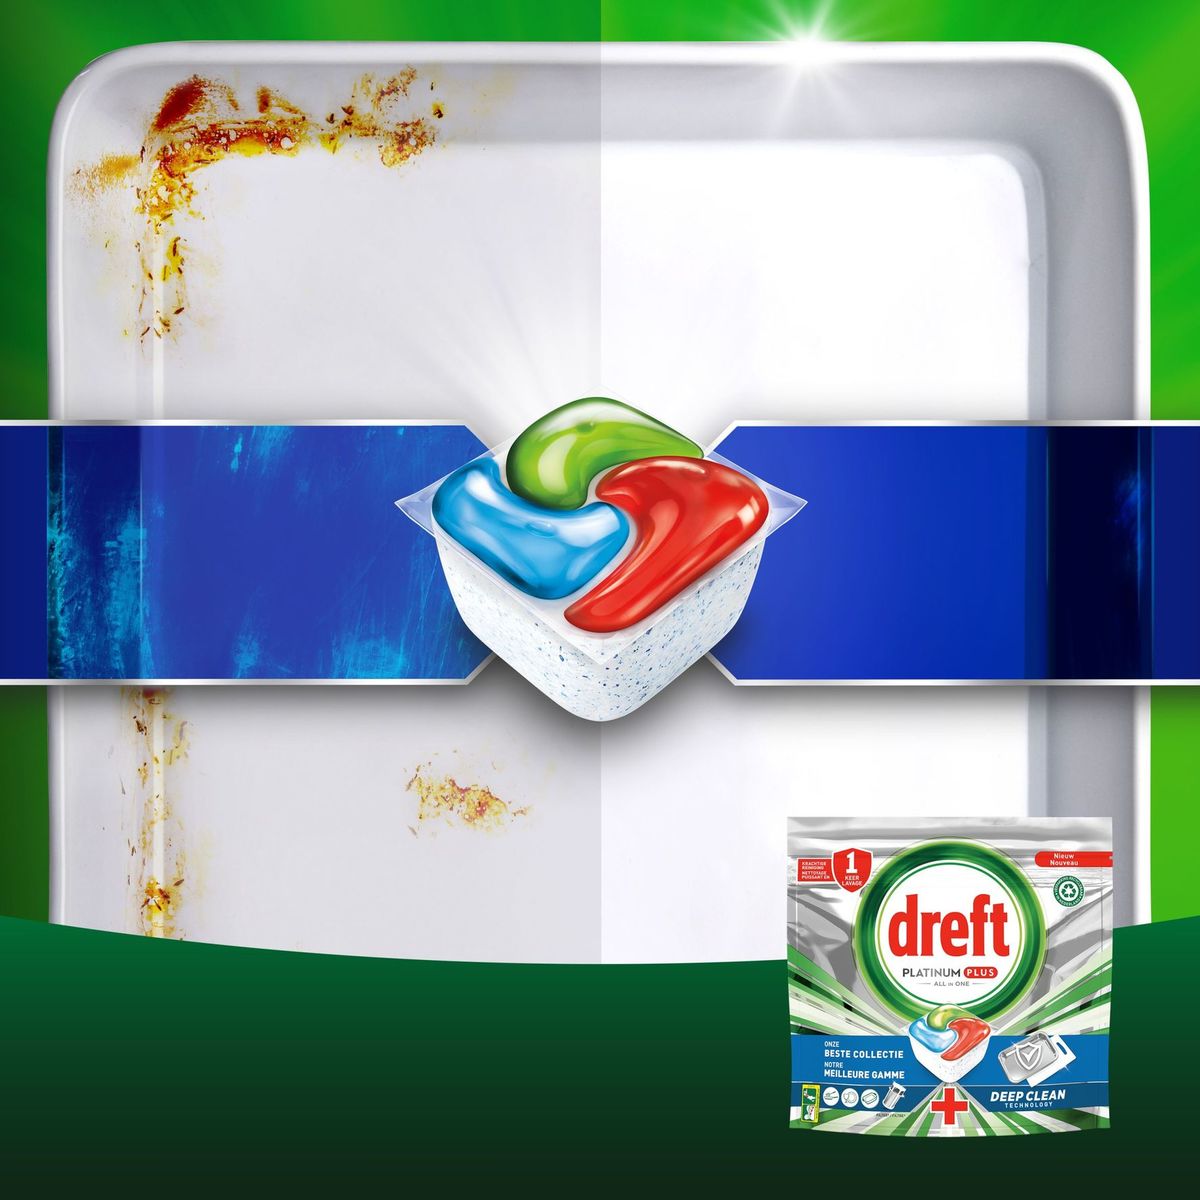 Dreft Platinum Plus All In One Capsules Lave-Vaisselle 28 Capsules